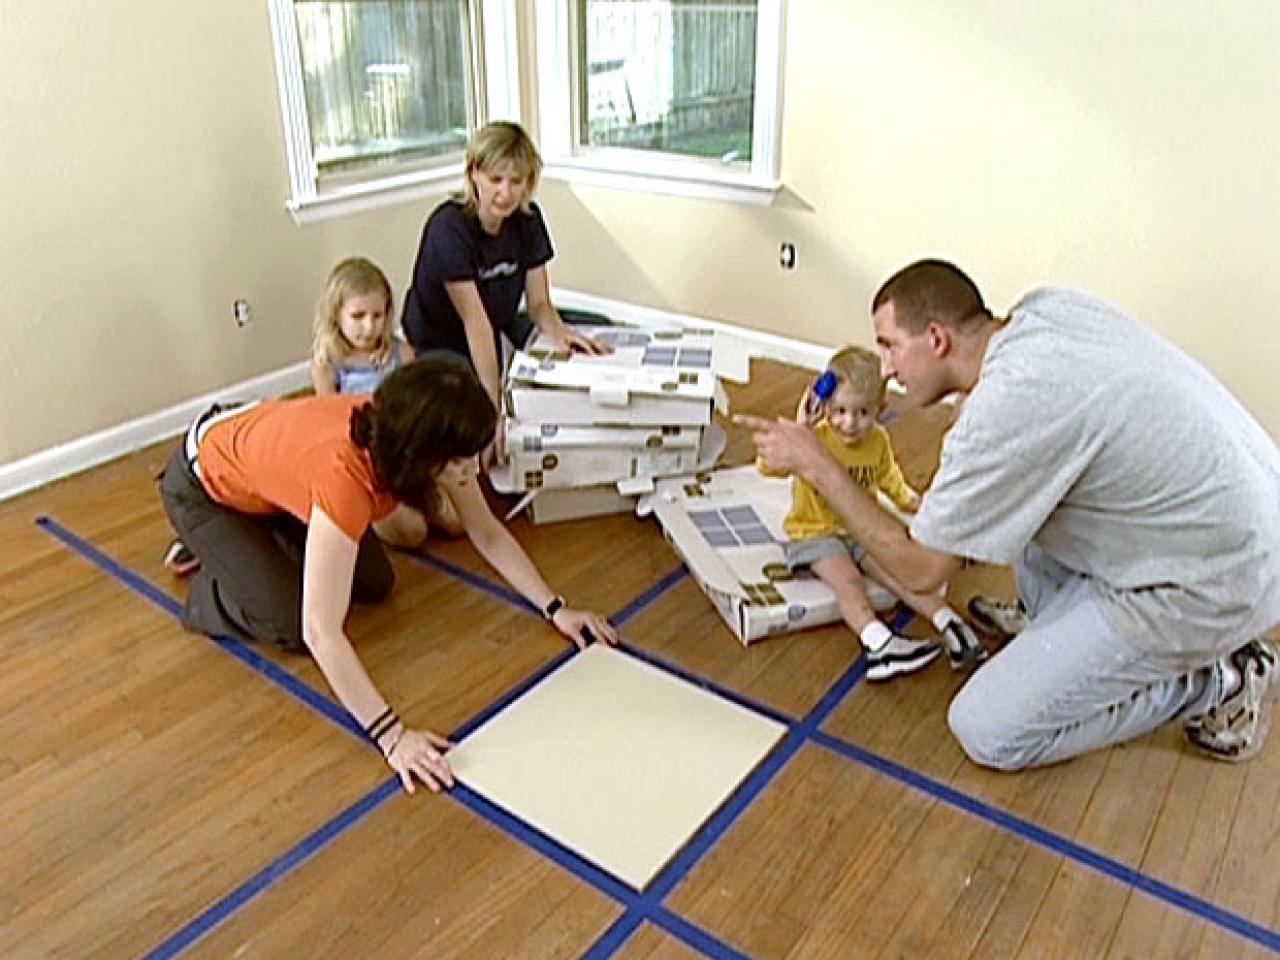 How to Install Carpet Tiles | HGTV